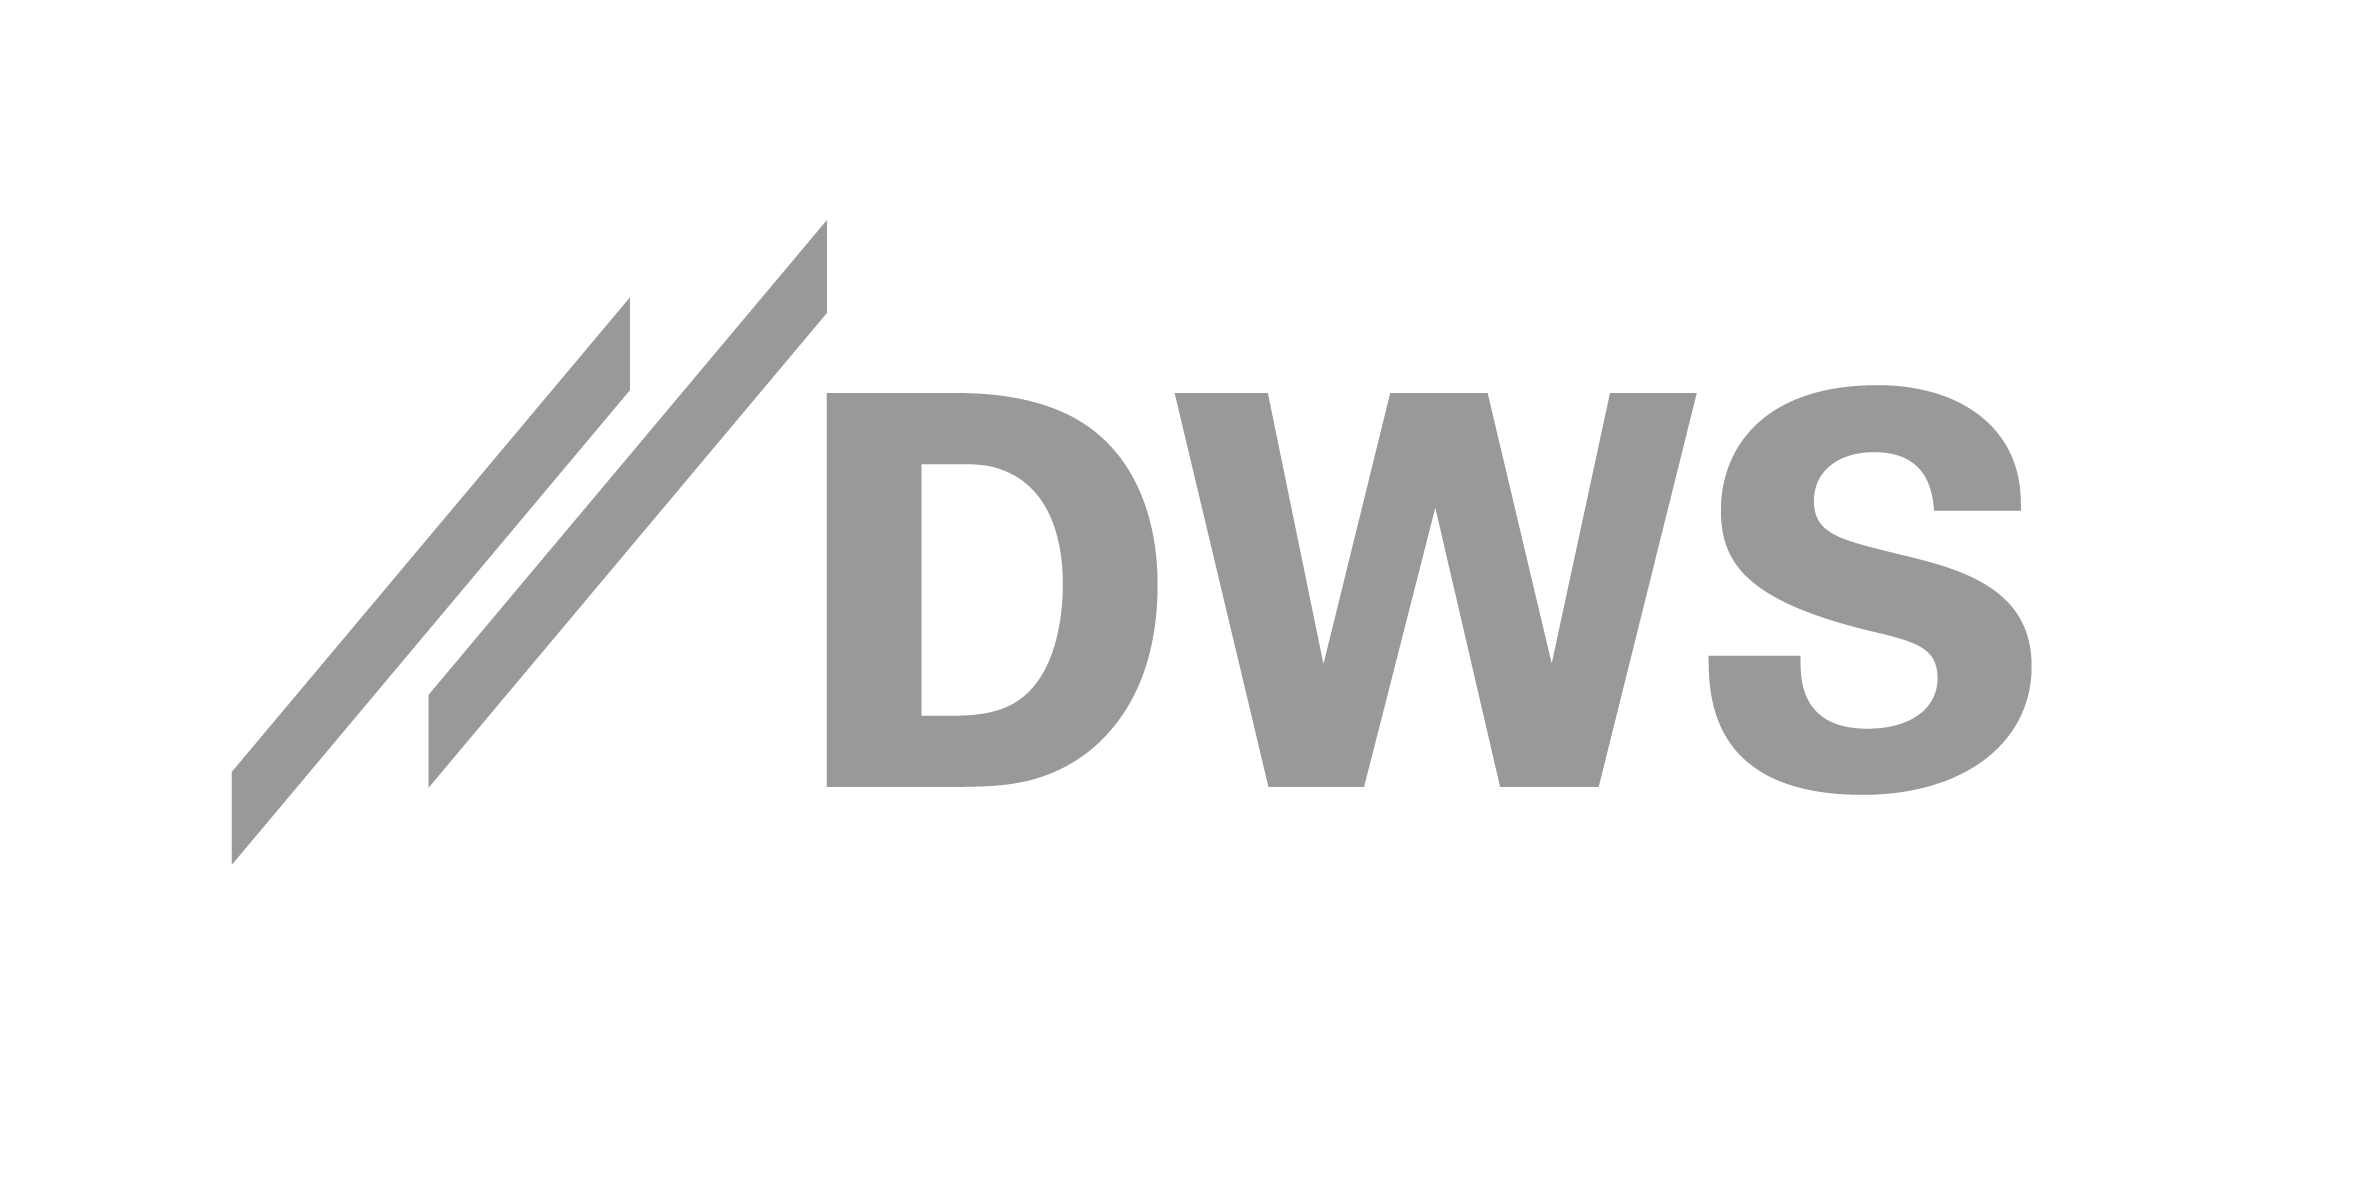 DWS SDG-strategi når en miljard euro i förvaltat kapital